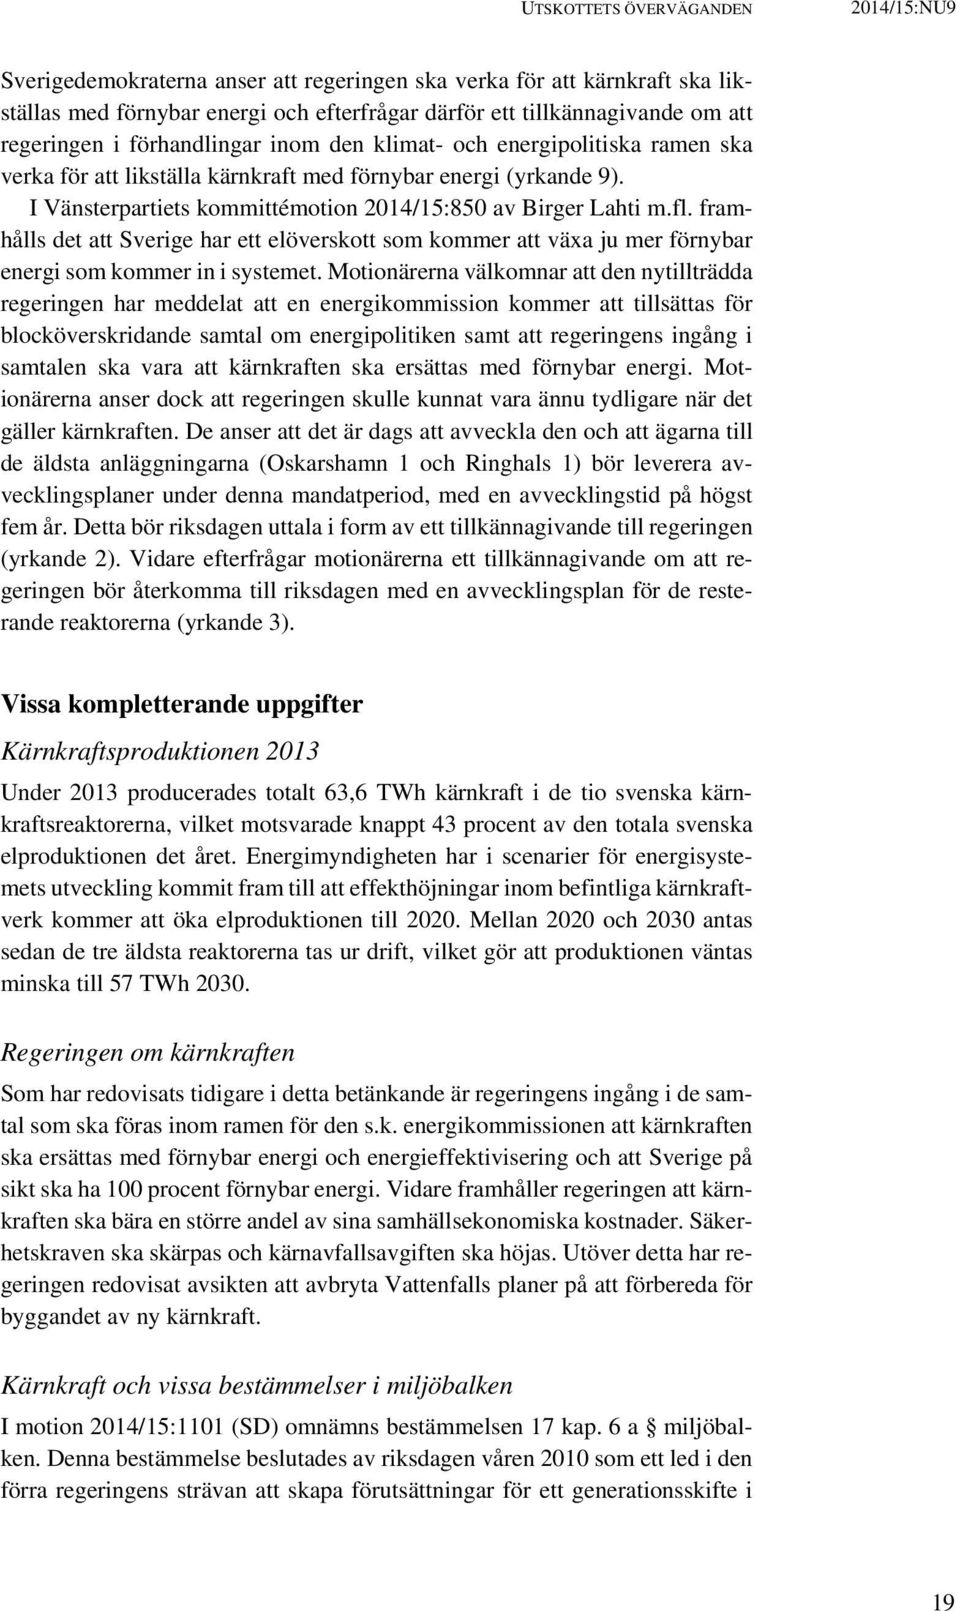 I Vänsterpartiets kommittémotion 2014/15:850 av Birger Lahti m.fl. framhålls det att Sverige har ett elöverskott som kommer att växa ju mer förnybar energi som kommer in i systemet.